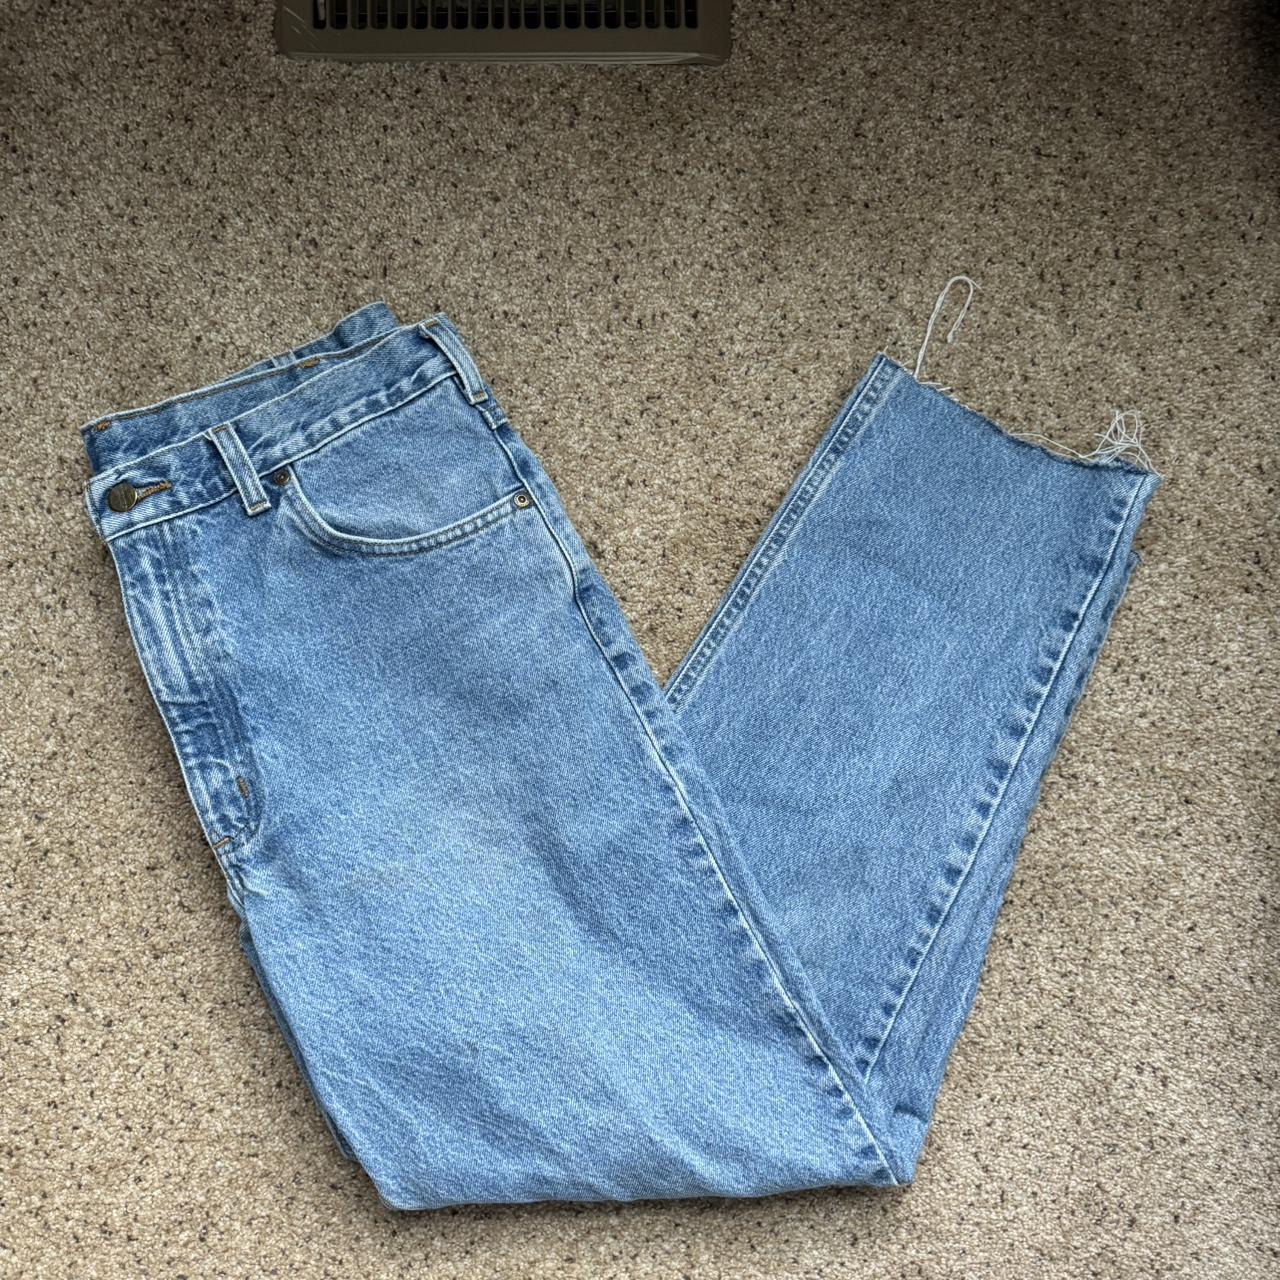 Vintage Carhartt Light Blue Wash Jeans Size... - Depop